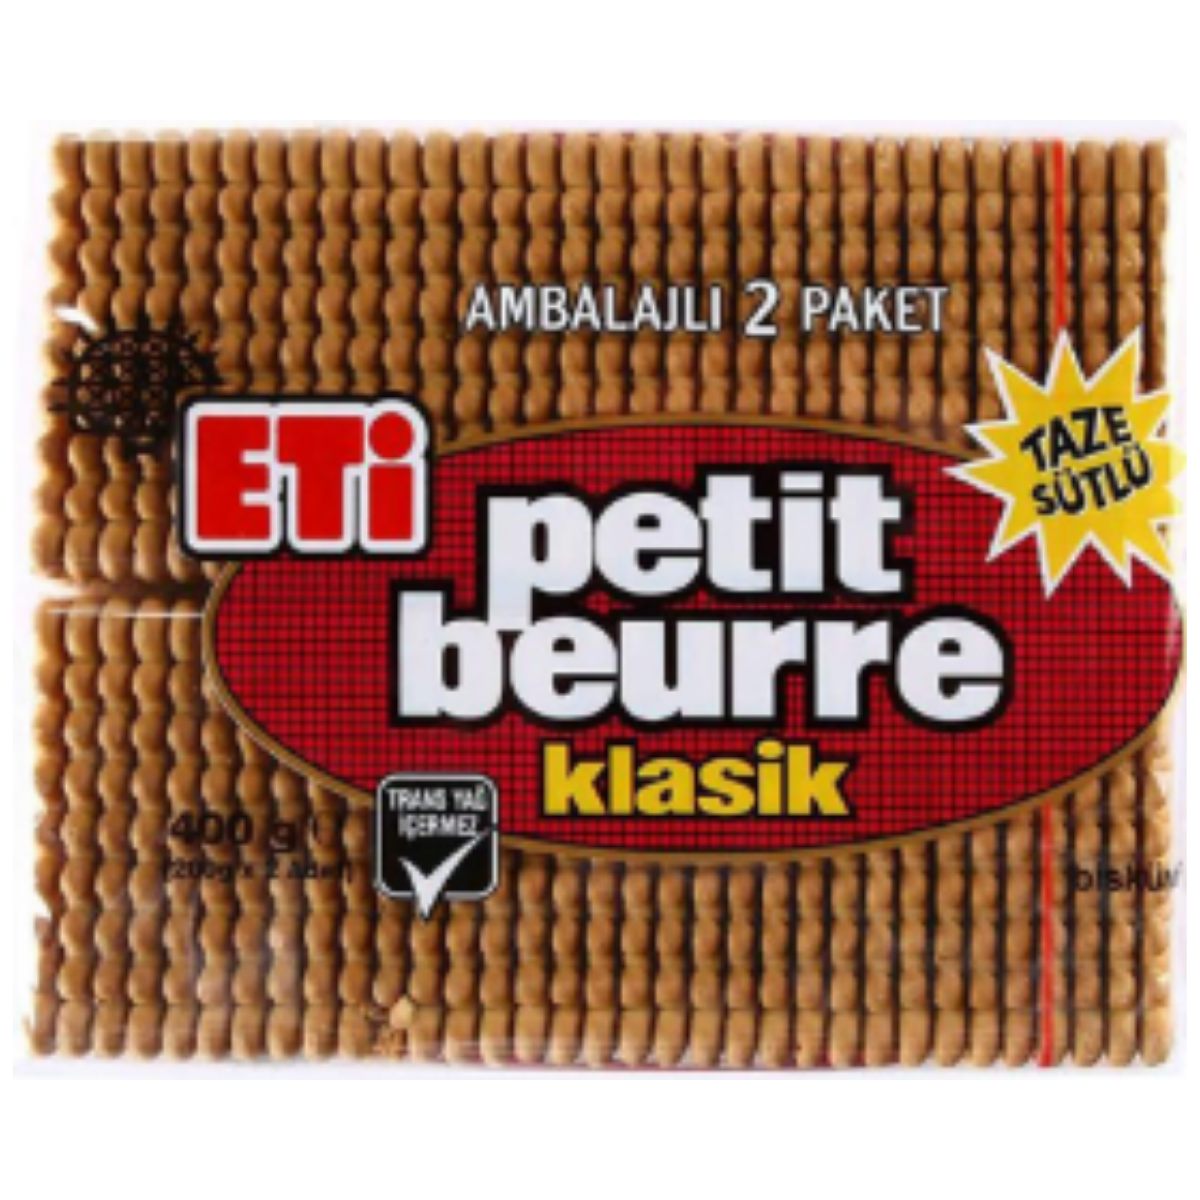 ETI BISKUVI PETIT BEURE 400 G